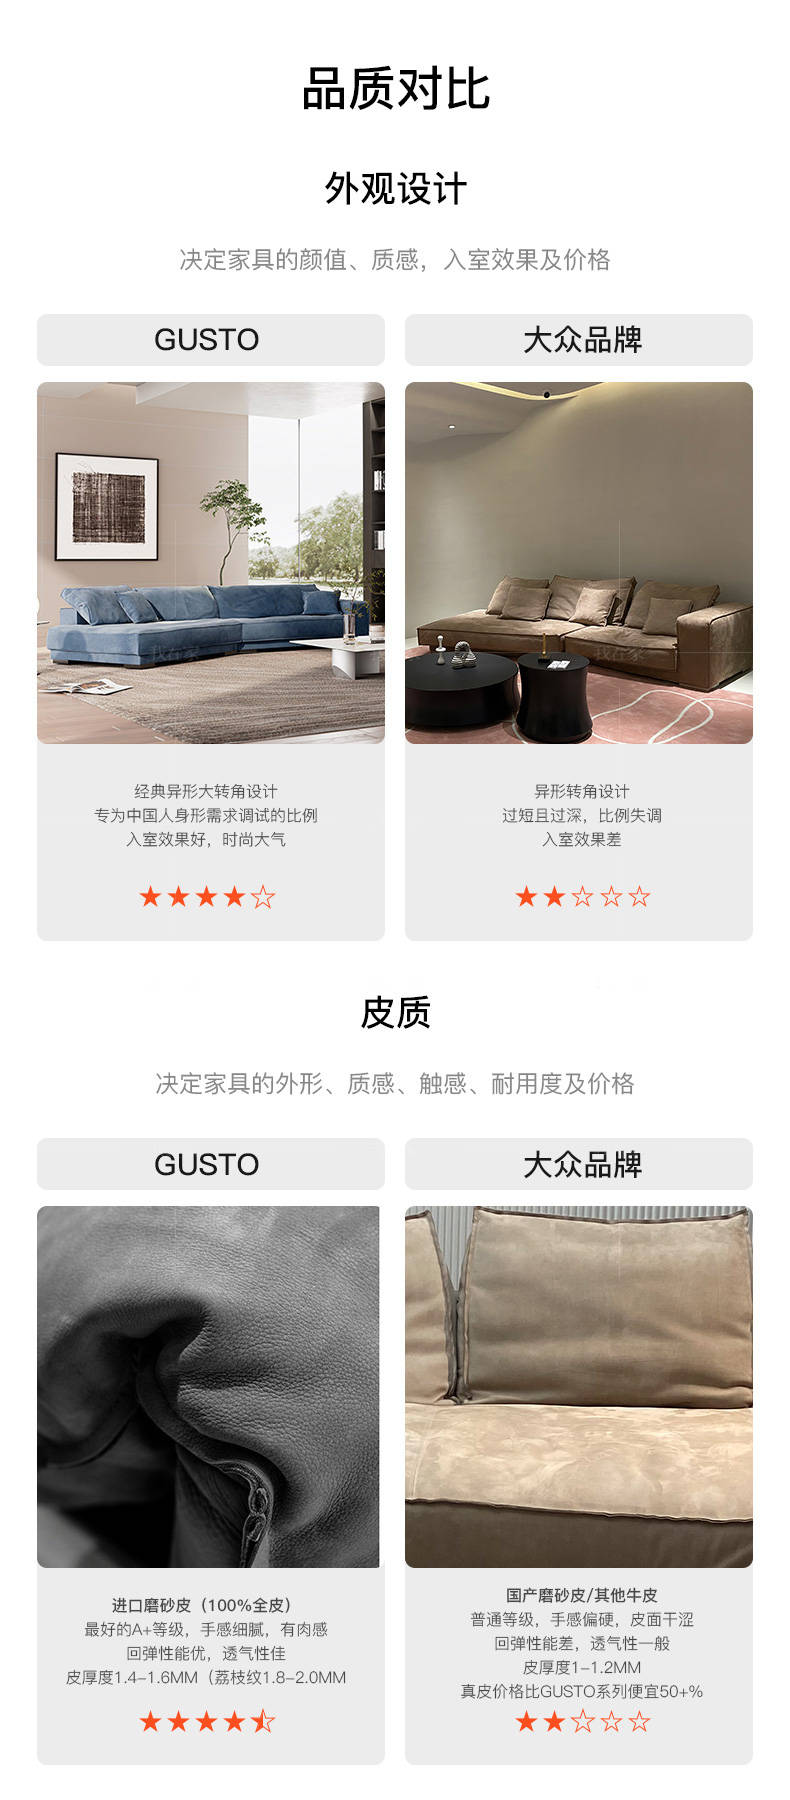 意式极简风格hardsoft皮沙发的家具详细介绍